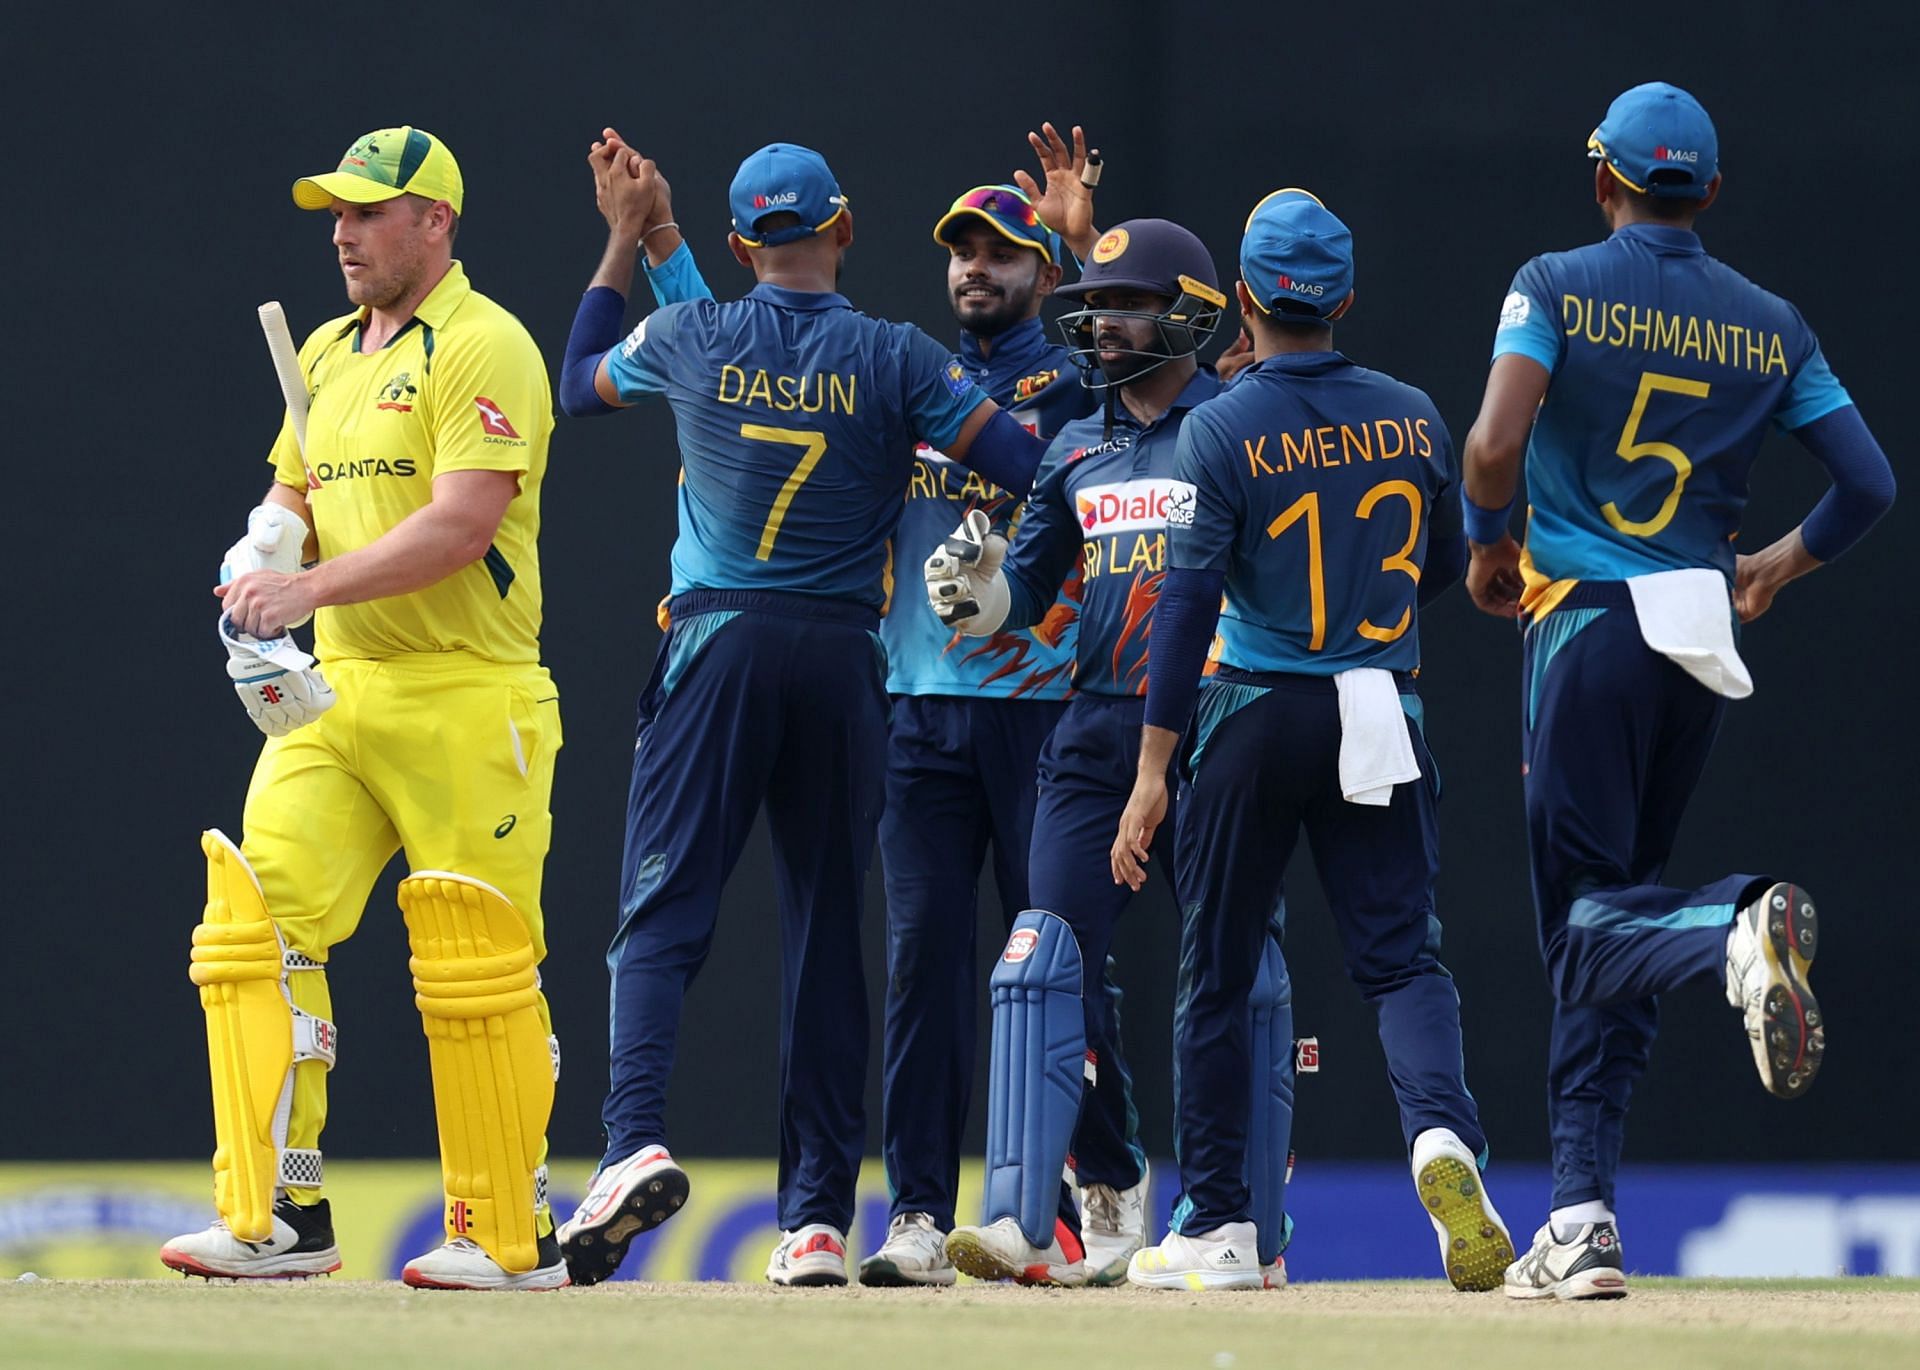 Sri Lanka v Australia - 3rd ODI